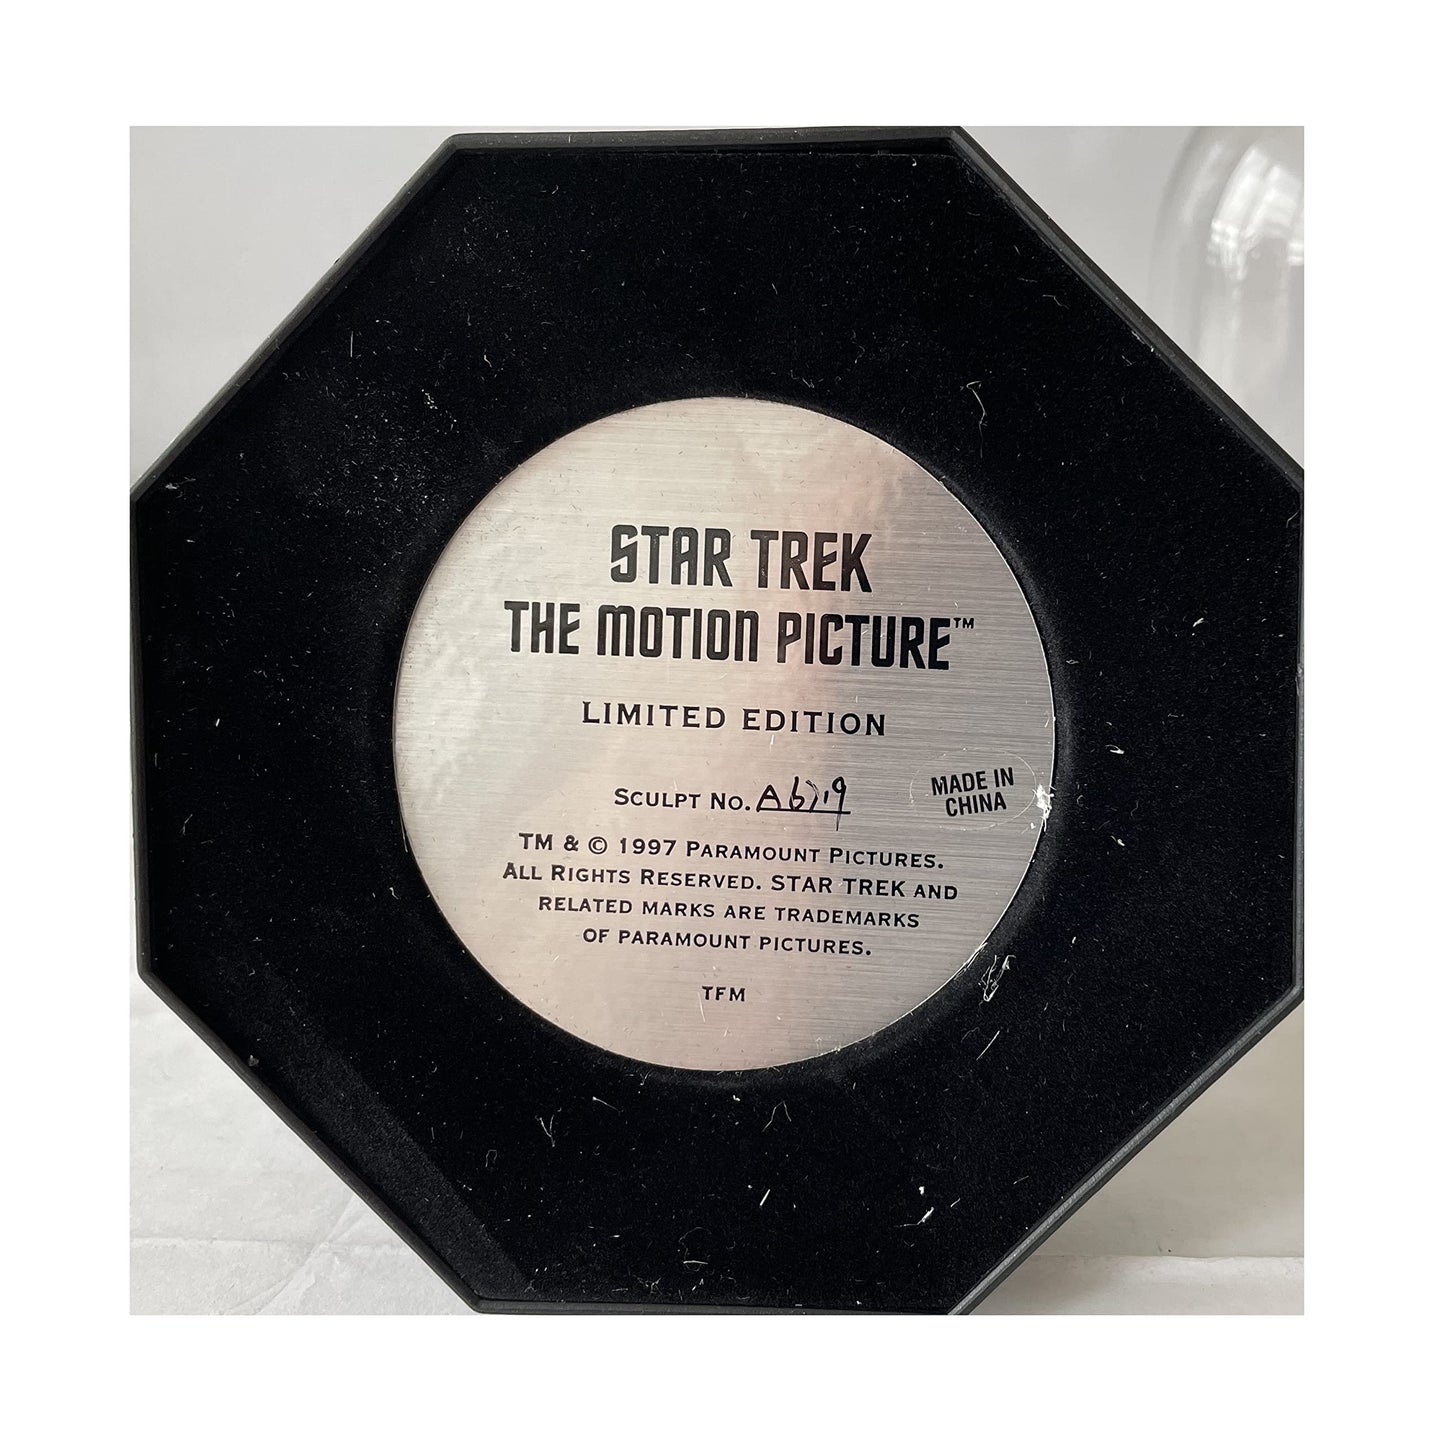 Vintage 1998 Franklin Mint - Star Trek Limited Edition Diarama - The Motion Picture - USS Enterprise - V'Jer - Shop Stock Room Find